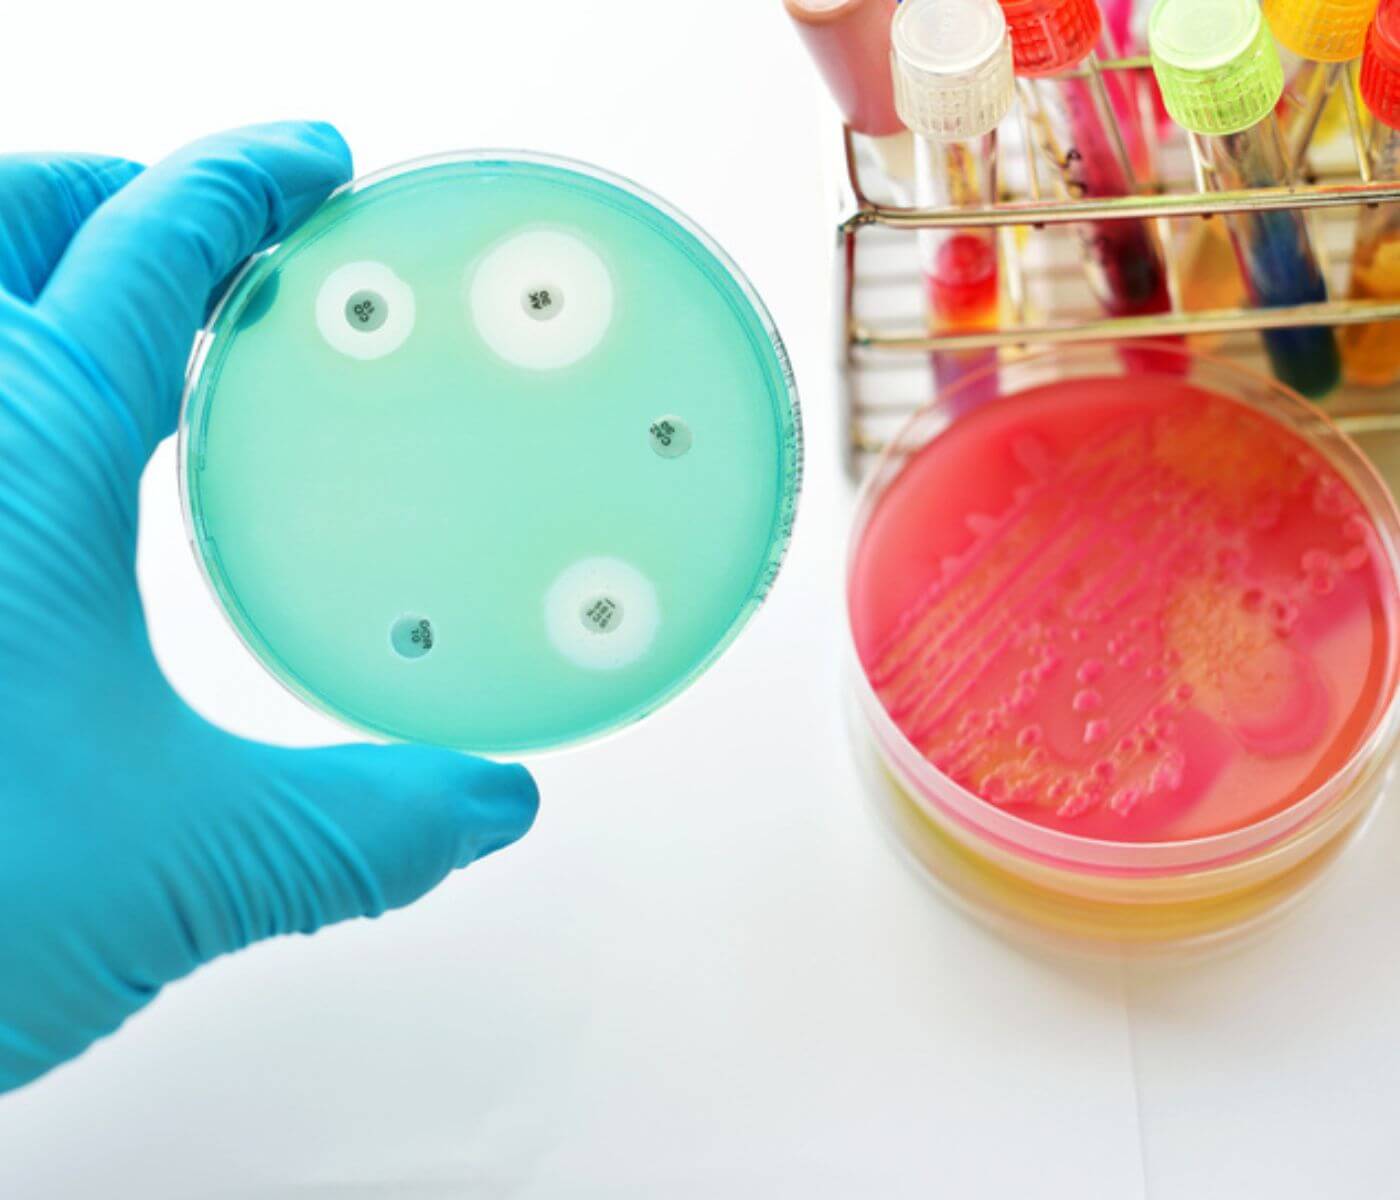 البكتيريا المقاومة للمضادات الحيوية عالية الإستخدام لا تزال دائمة في الحيوانات والبشر